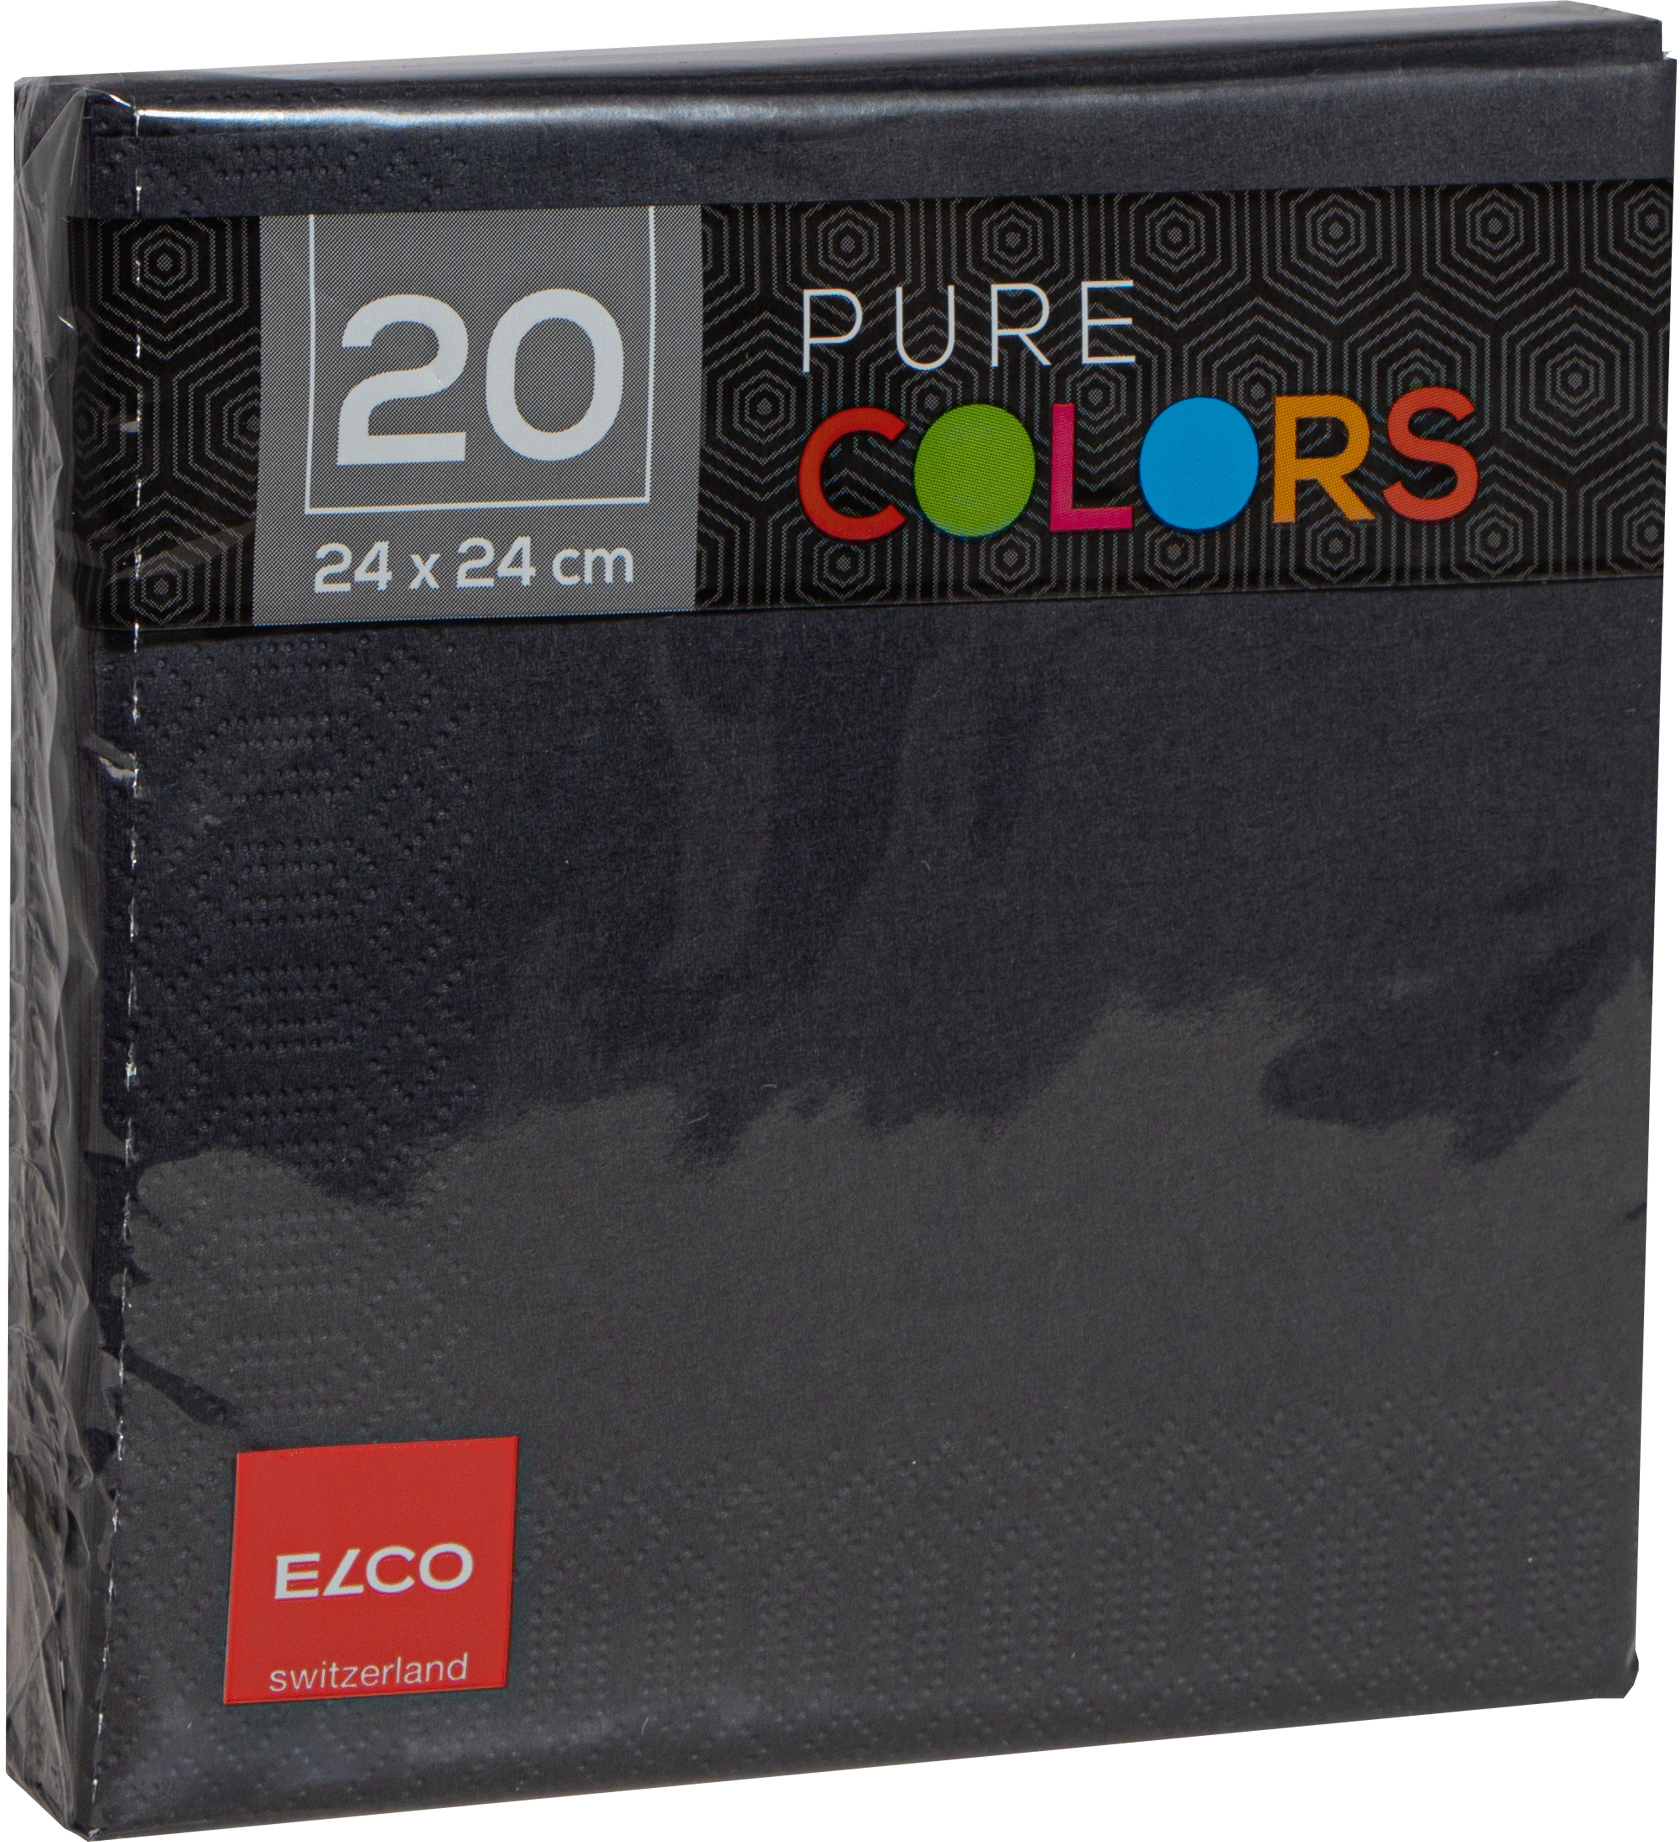 ELCO Serviettes tissue 24x24cm PC234020-090 3 plis, noir 20pcs. 3 plis, noir 20pcs.